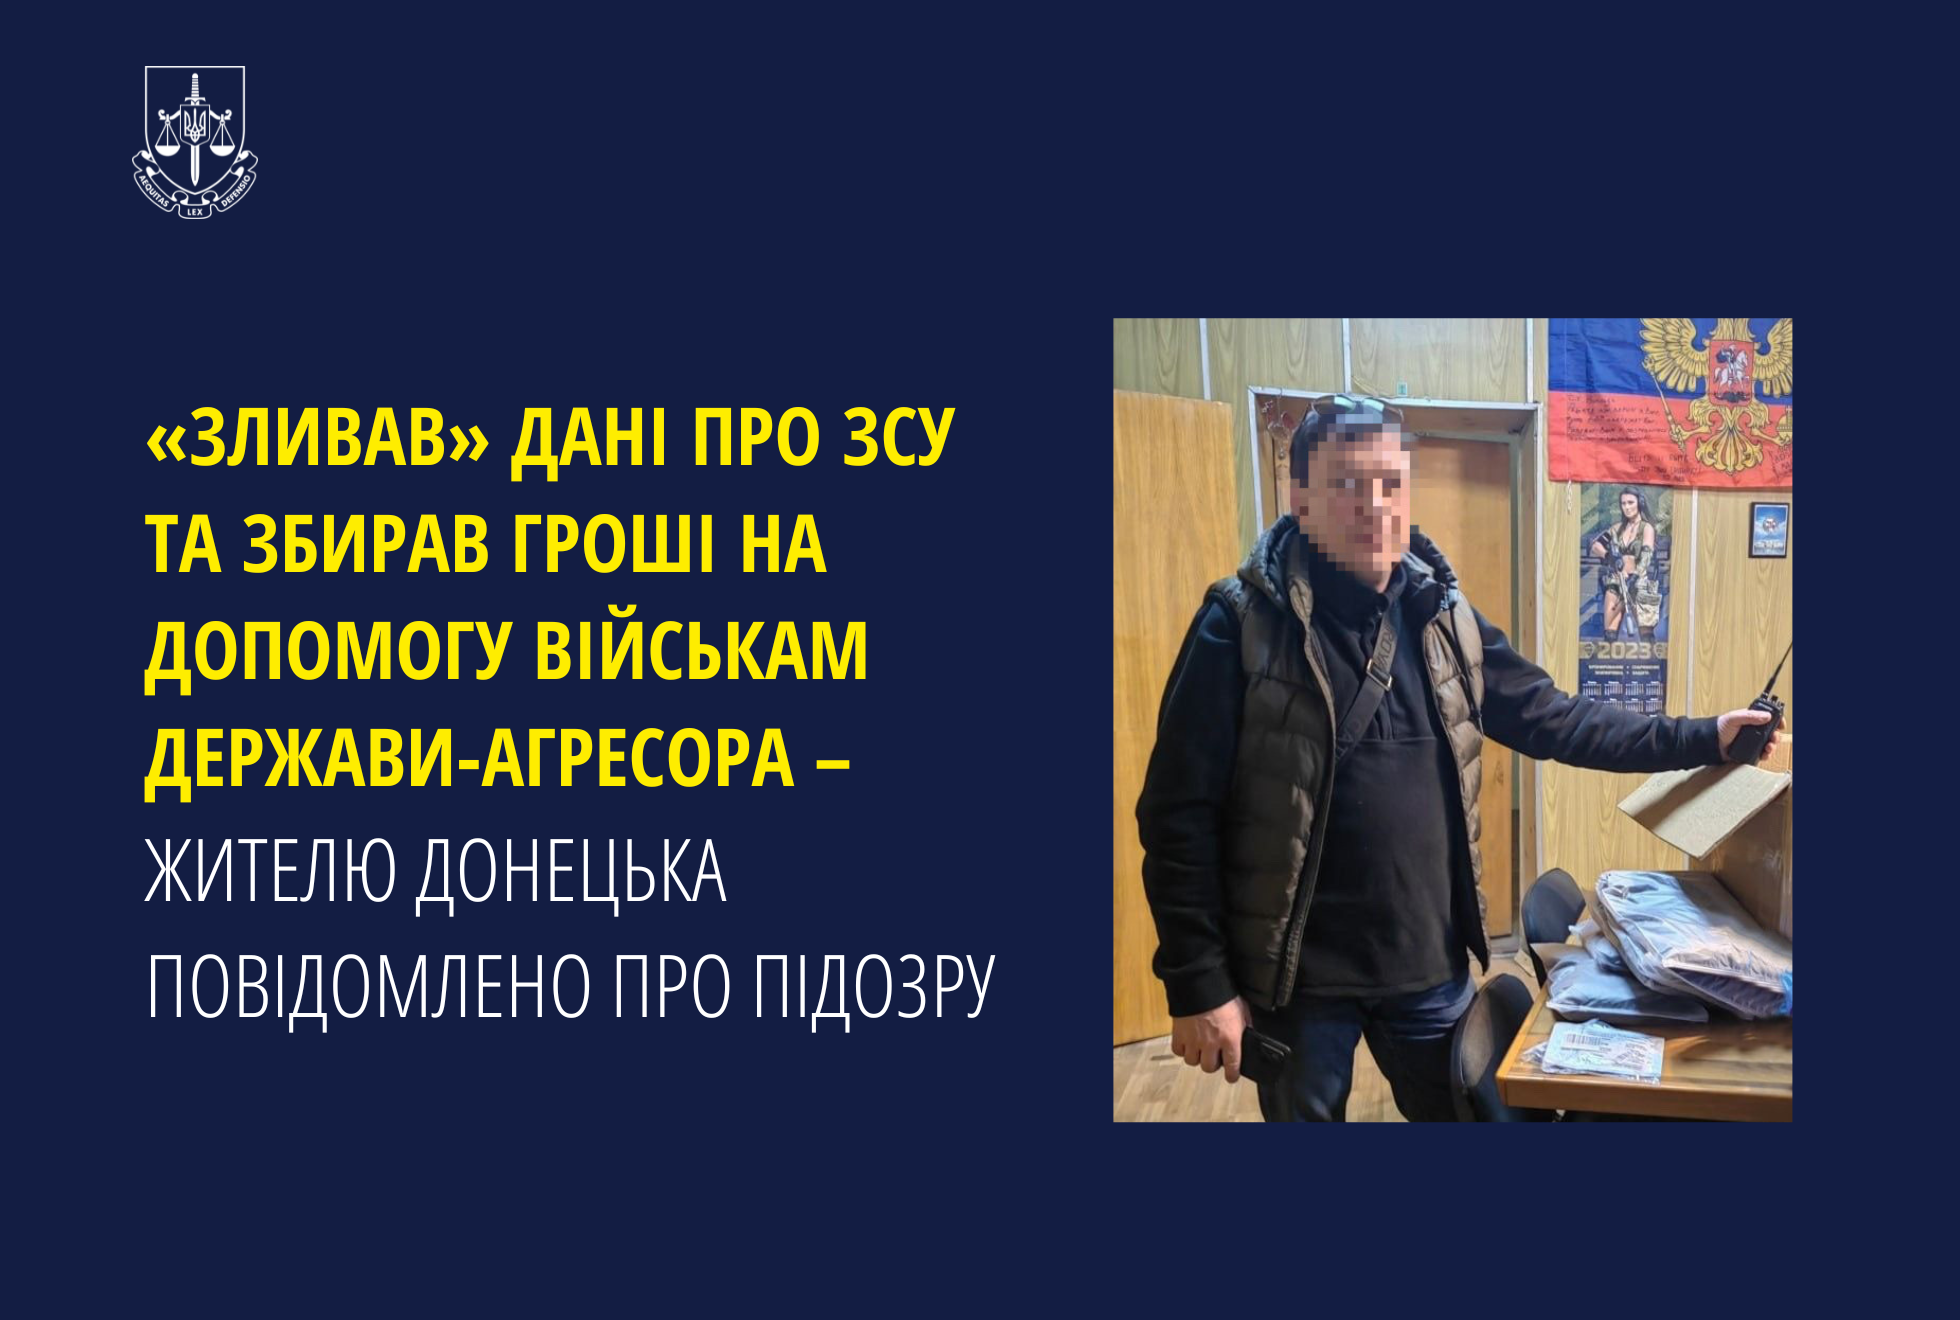 «Зливав» дані про ЗСУ та збирав гроші на допомогу військам держави-агресора – жителю Донецька повідомлено про підозру